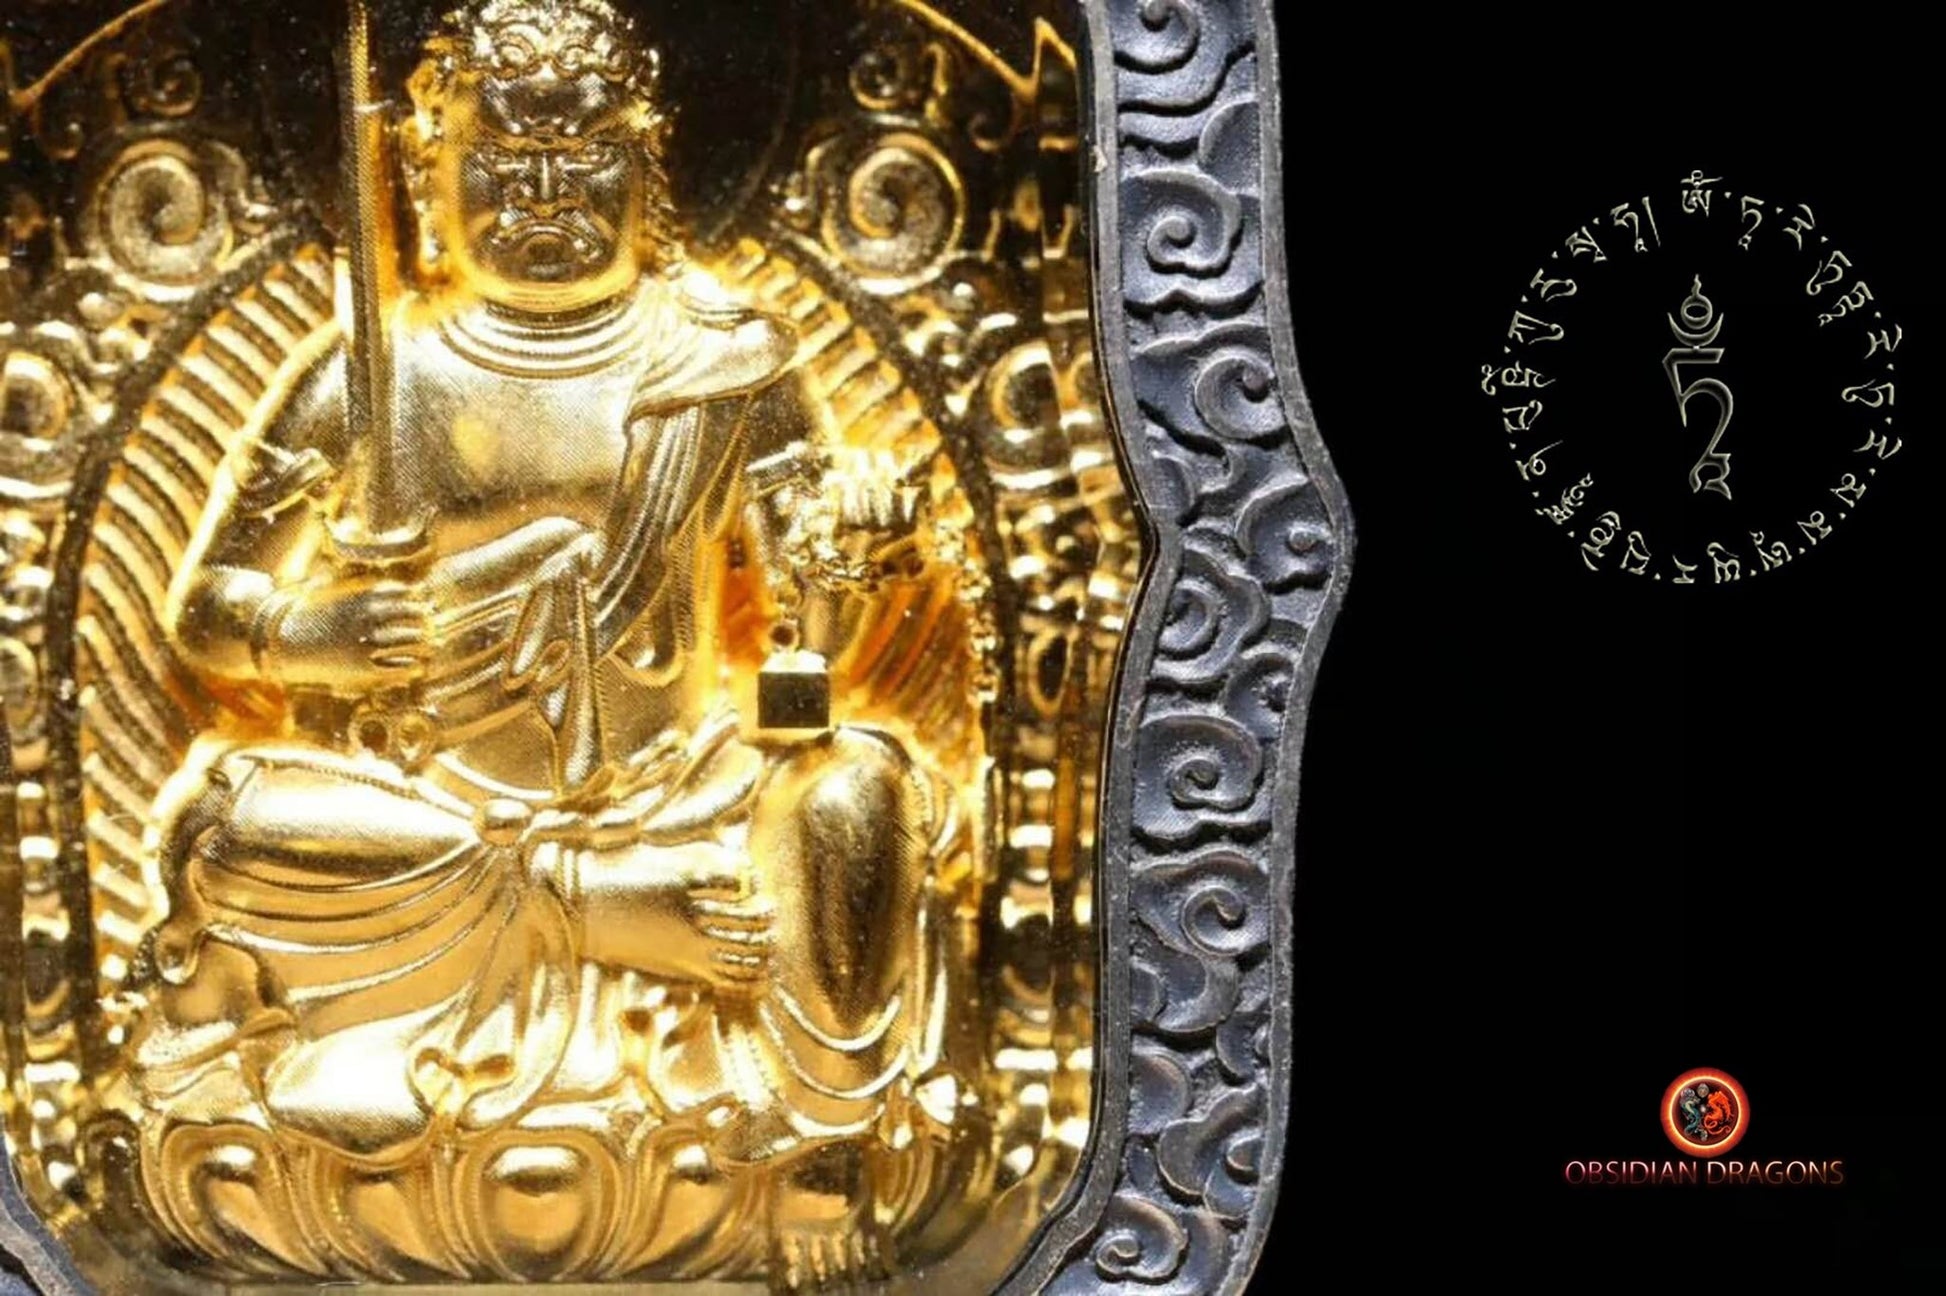 Pendentif bouddha- Ghau- Bouddha Acala | obsidian dragons